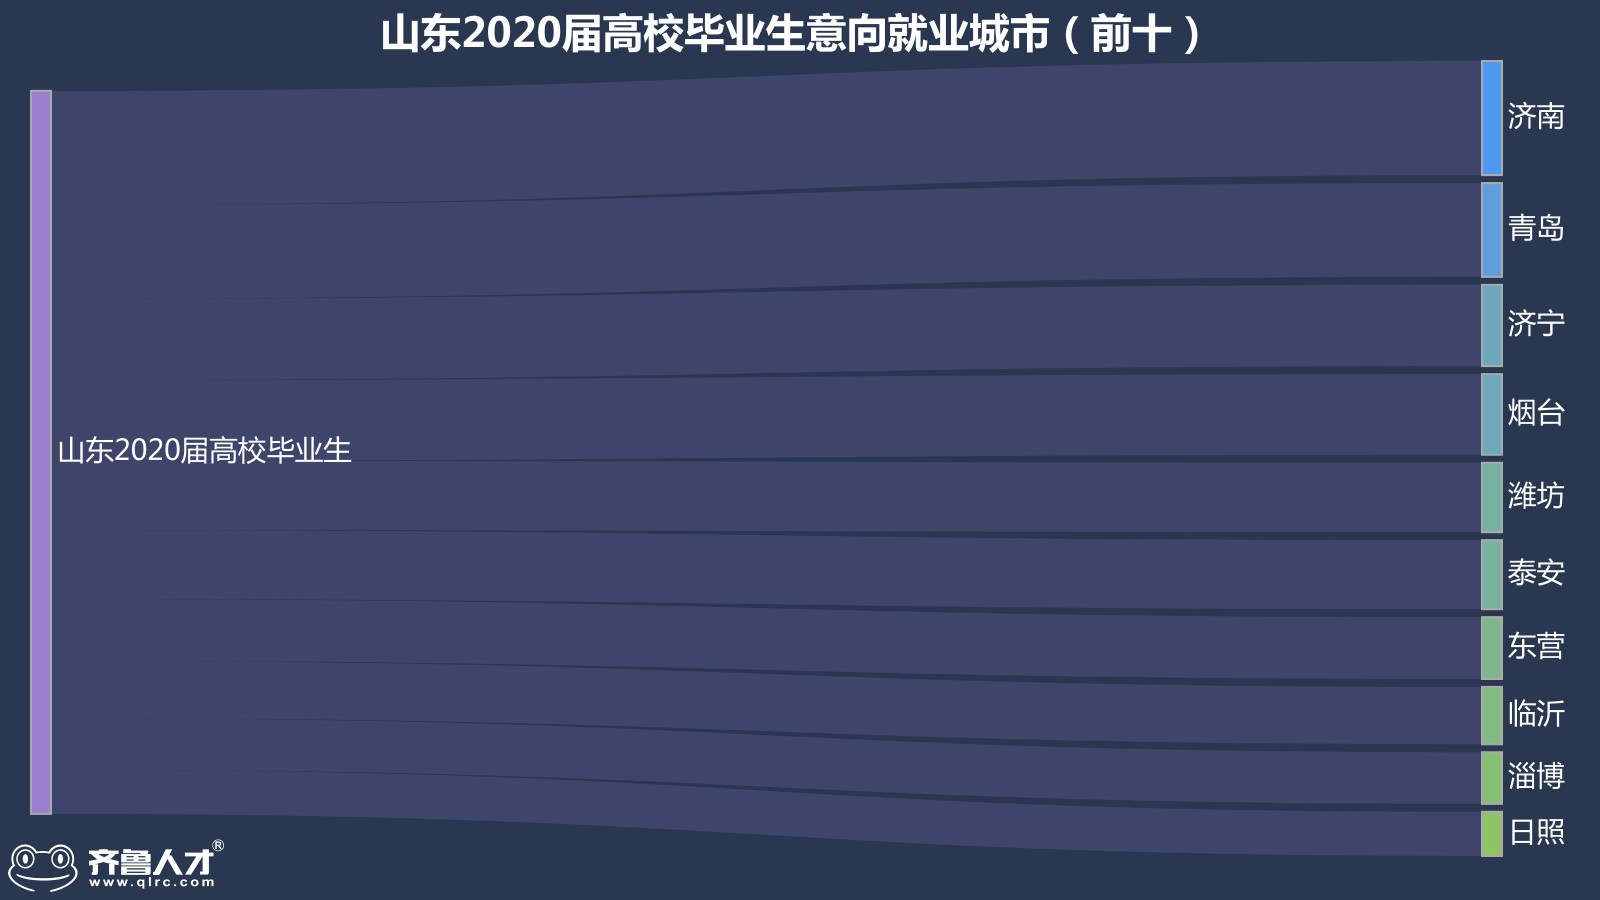 齊魯人才網濟南成為山東2020屆高校畢業生就業地首選，平均薪酬達5986元圖1.jpg